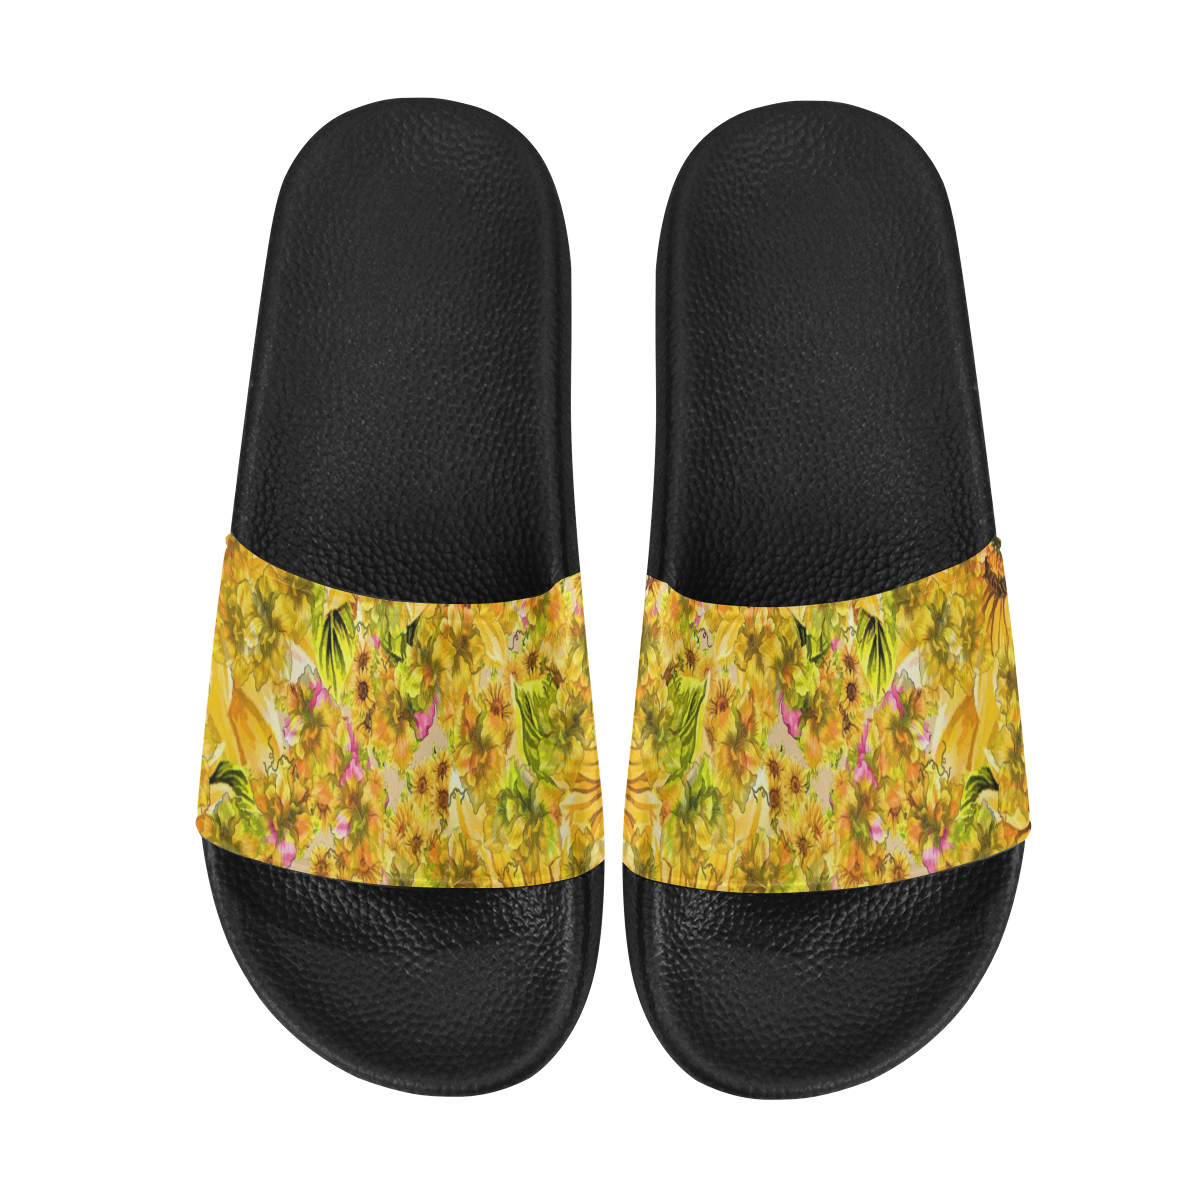 Orange Yellow Sunflowers Men's Slide Sandals (Model 057)